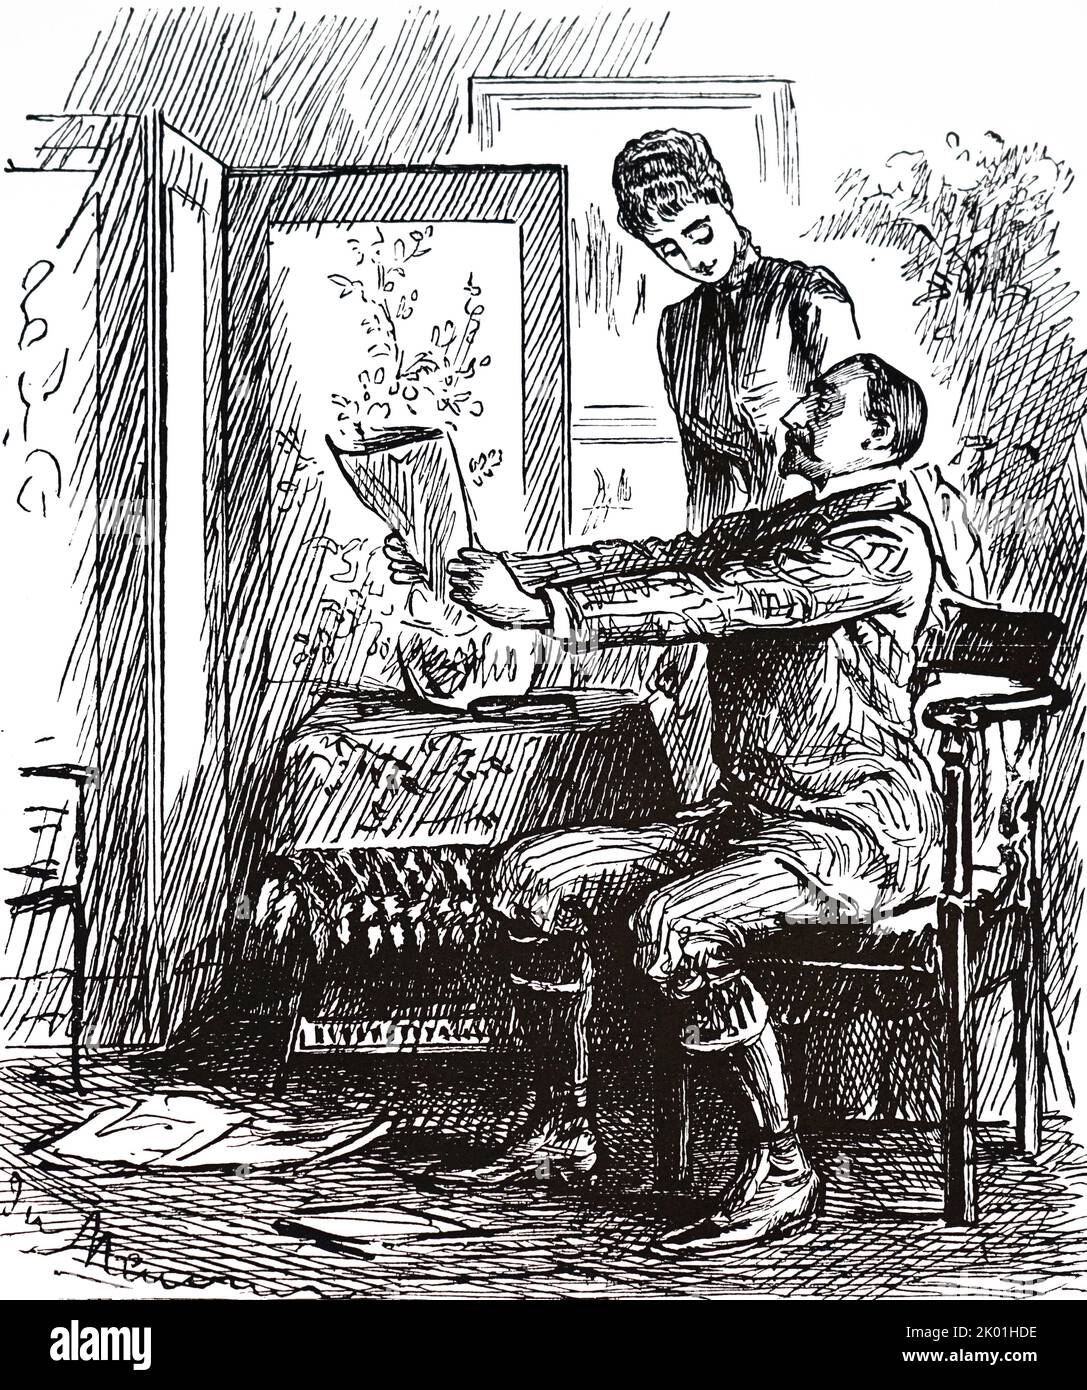 Presbytie. Dessin animé de George du Maurier de Punch, Londres, 29 octobre 1887. Banque D'Images